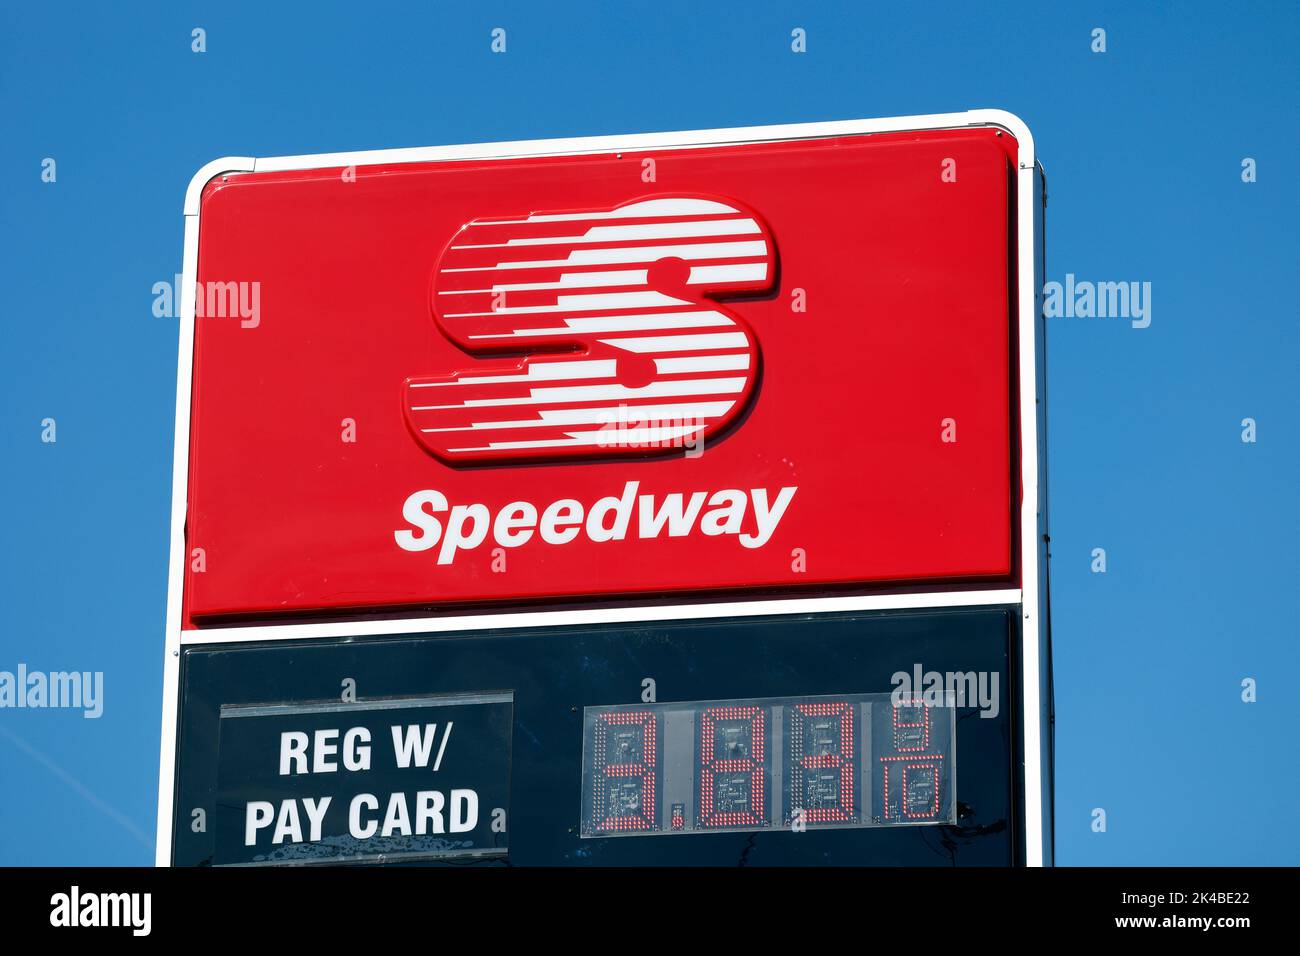 Beschilderung für eine Speedway-Tankstelle vor einem sonnigen blauen Himmel Stockfoto